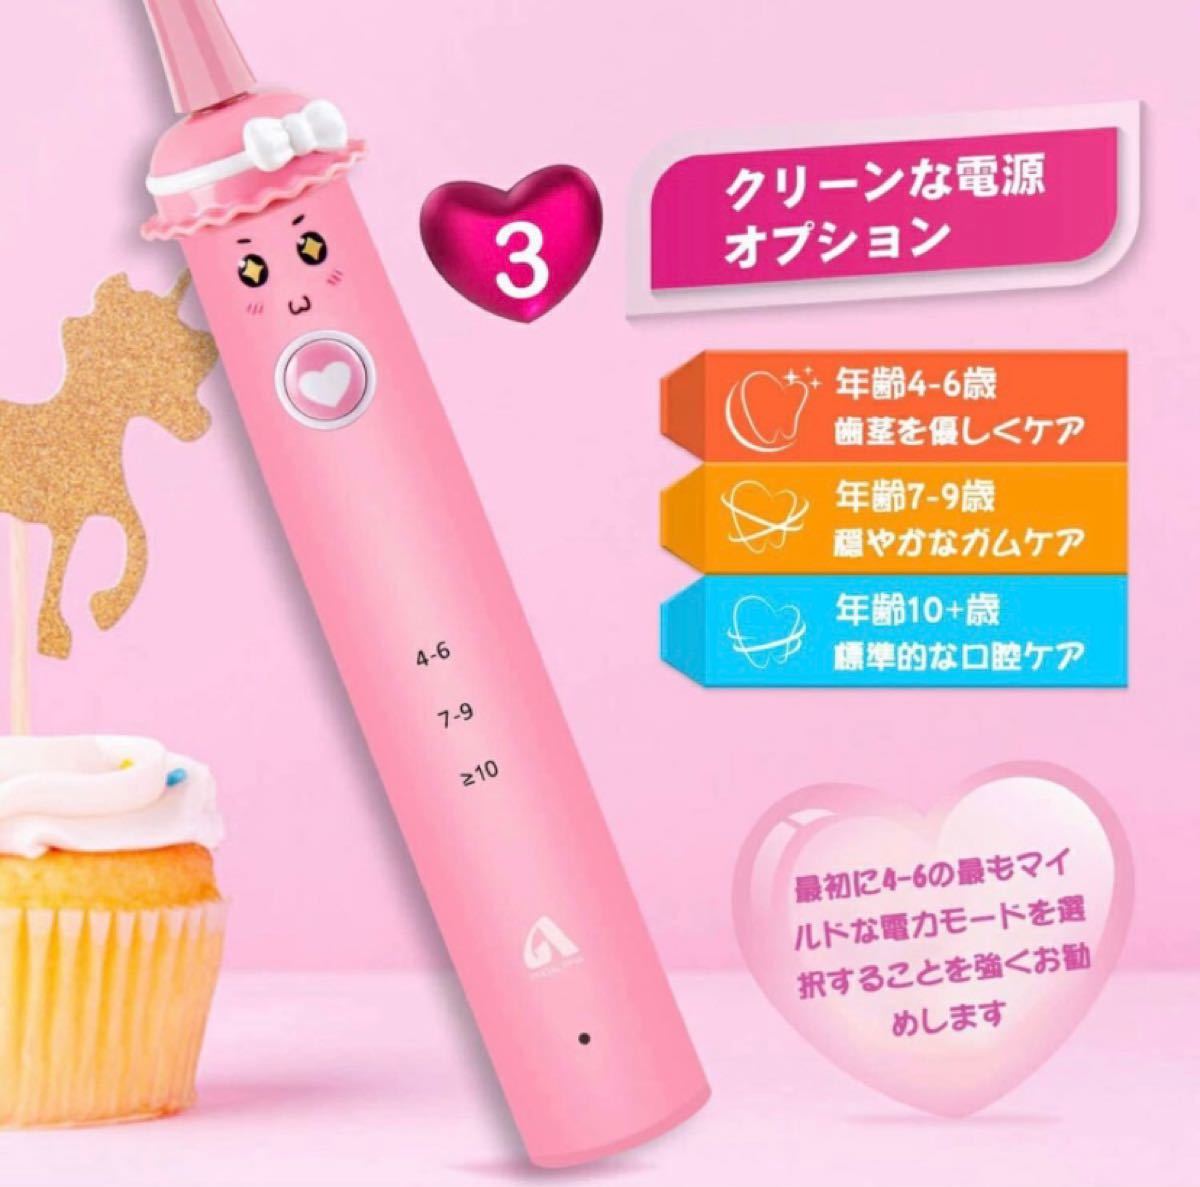 電動歯ブラシ 子供用 赤ちゃん 3-10歳 IPX7防水 歯ブラシ 替えブラシ付き USB充電式 タイマー付き 歯石除去 キッズ